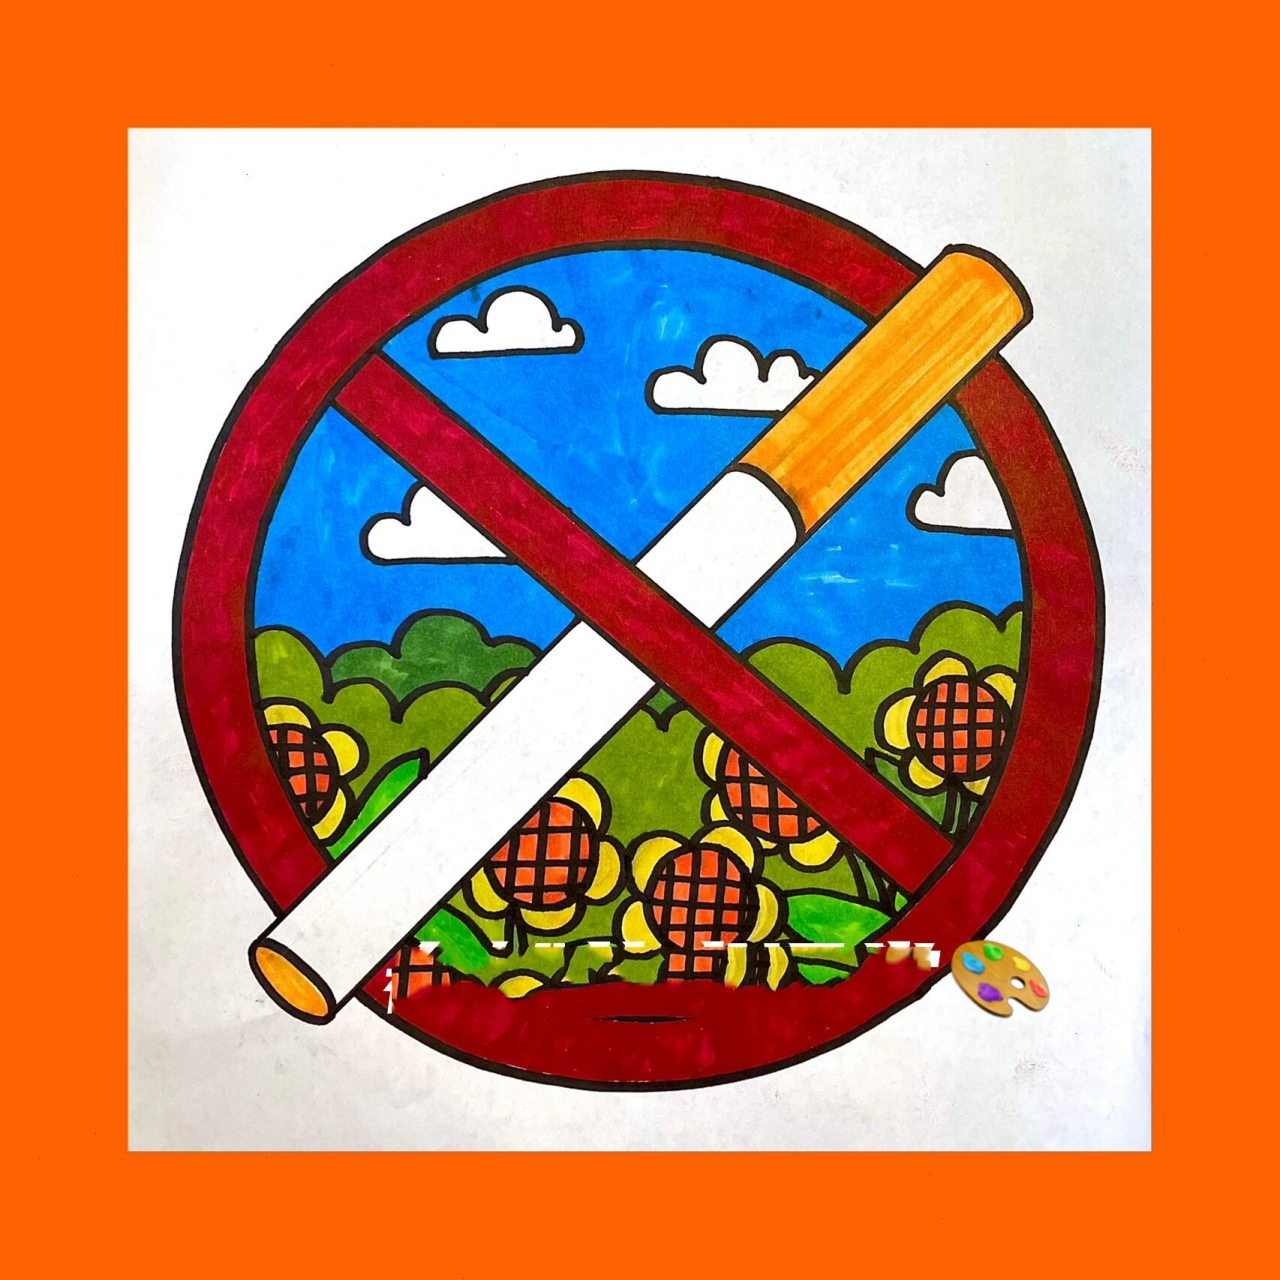 第二天是儿童节是希望下一代免受烟草危害 让我们用画笔呼吁洁净空气